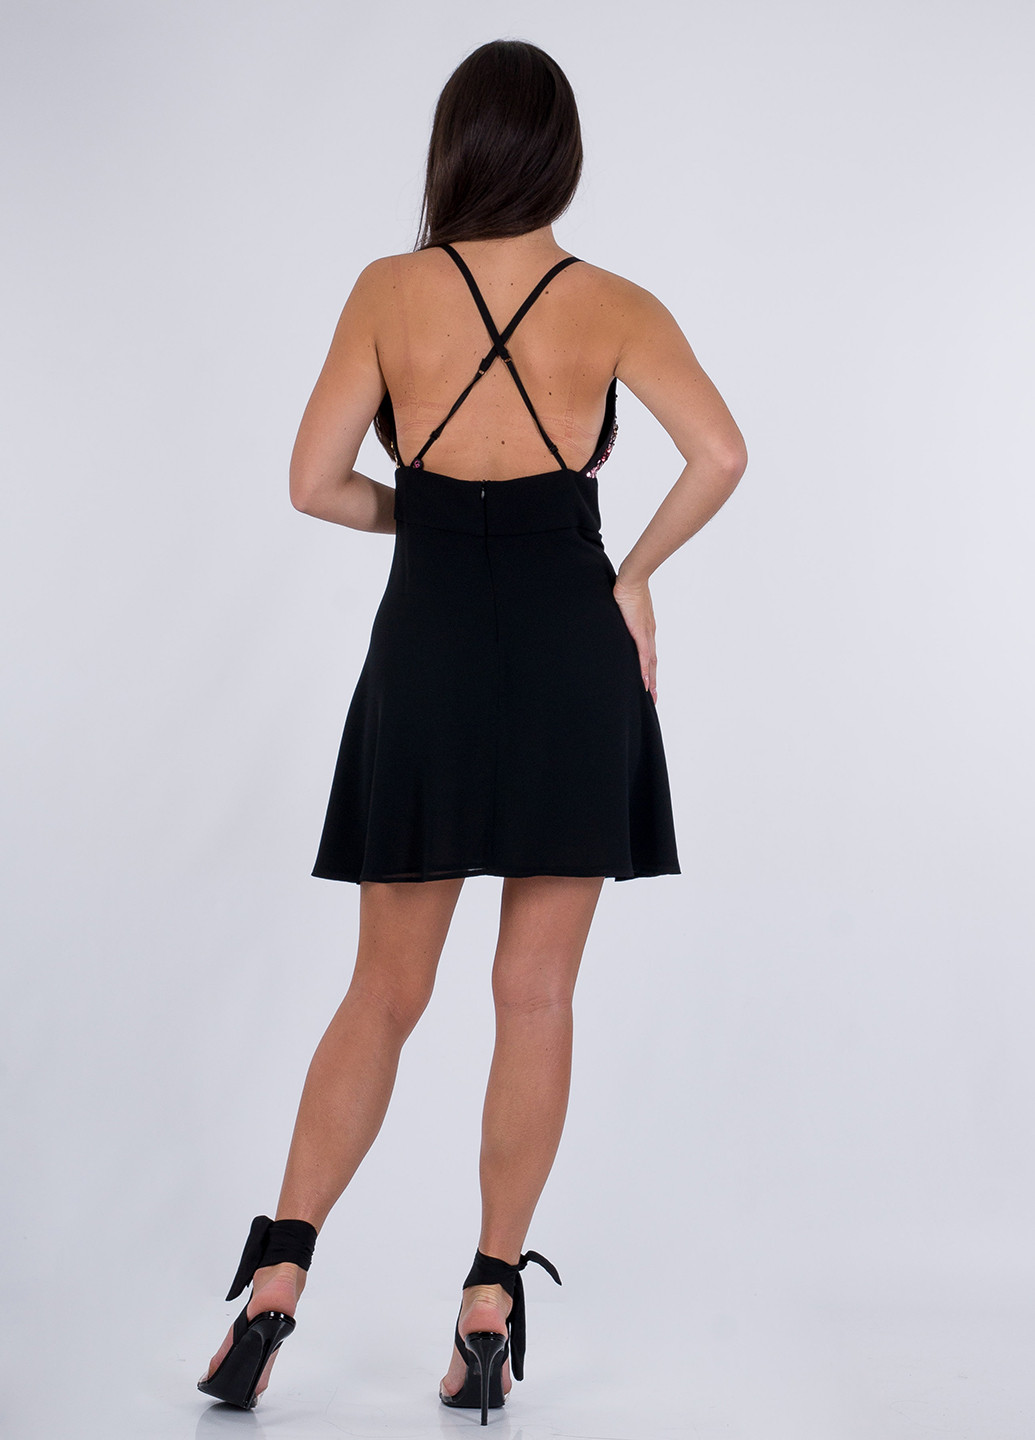 Черное коктейльное платье на запах, с открытой спиной Sarah Chole однотонное